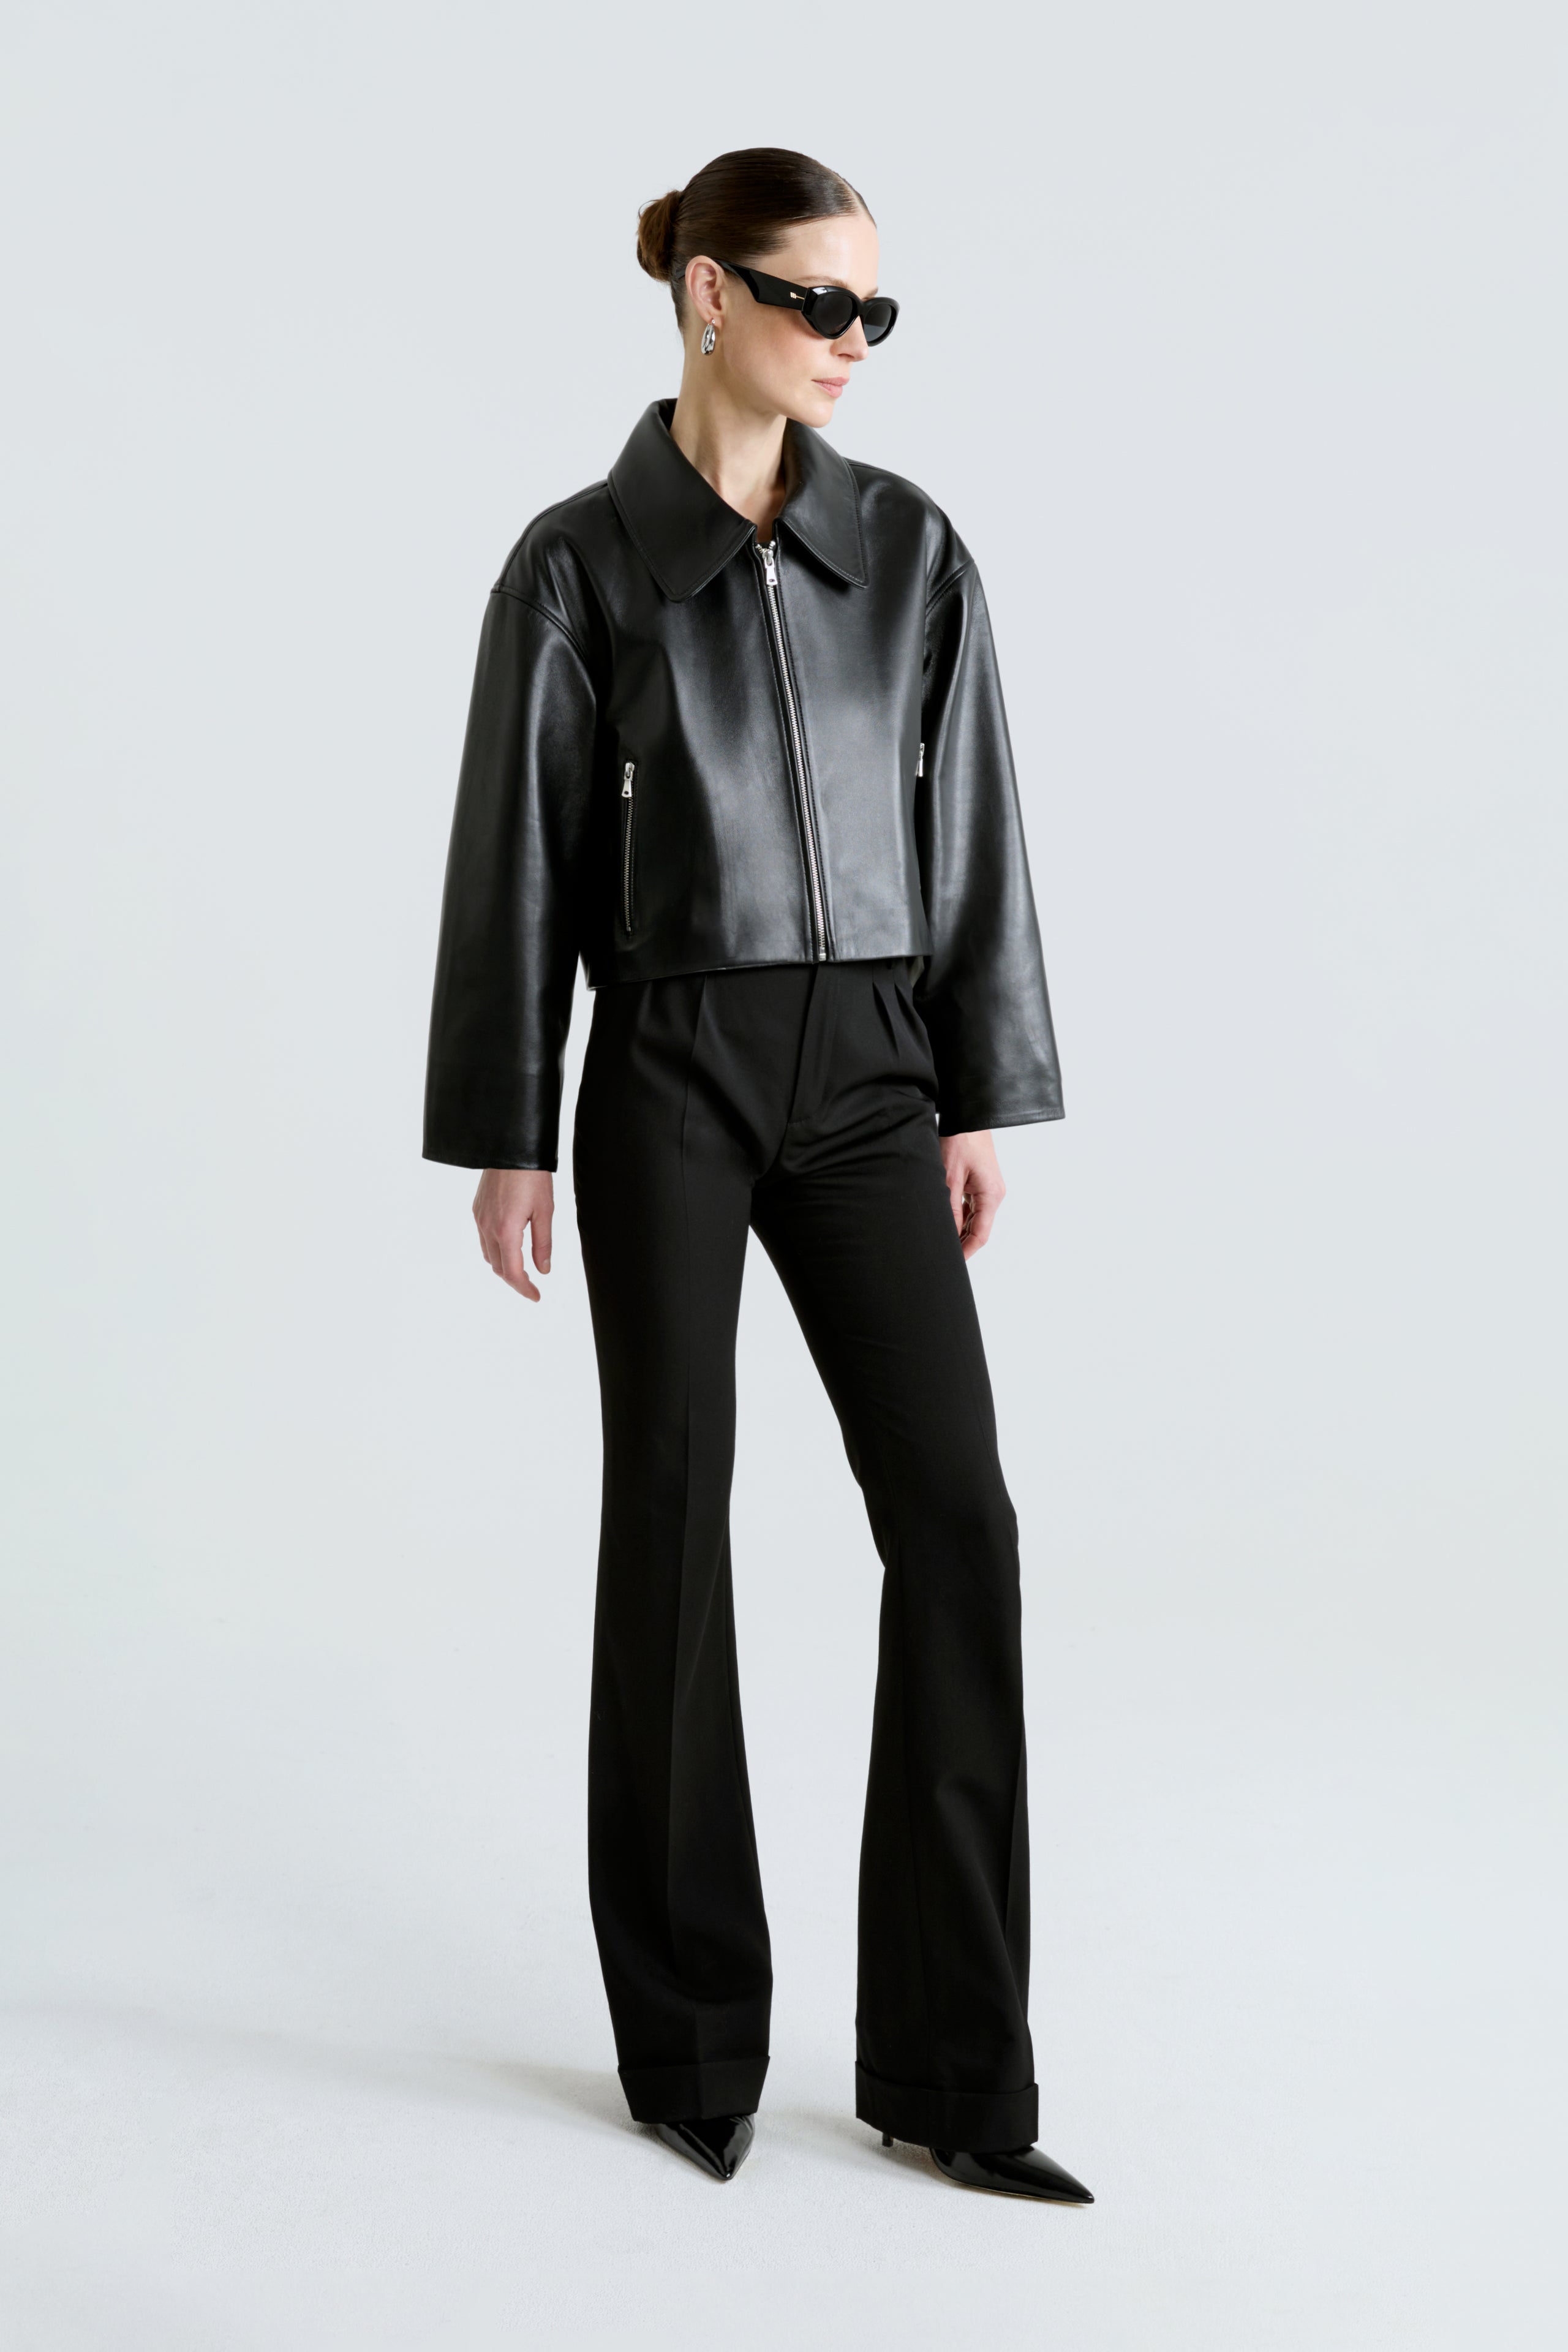 Model is wearing the Sloan Black Minimalist Leather Jacket Front